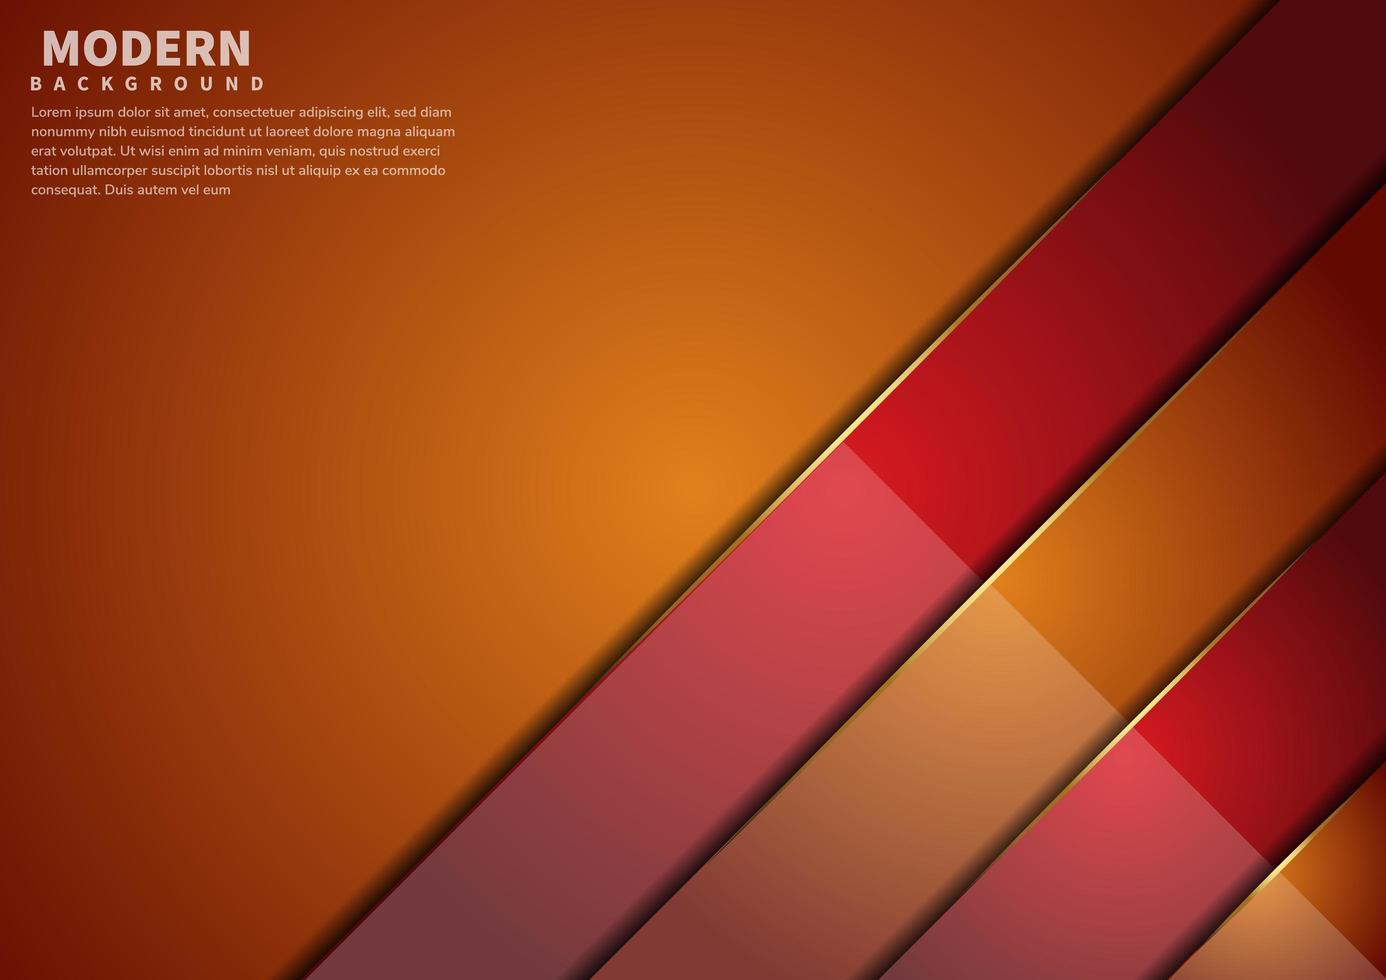 abstrakt orange och rött överlappar lager bakgrund med kopia utrymme för text. modern stil. vektor